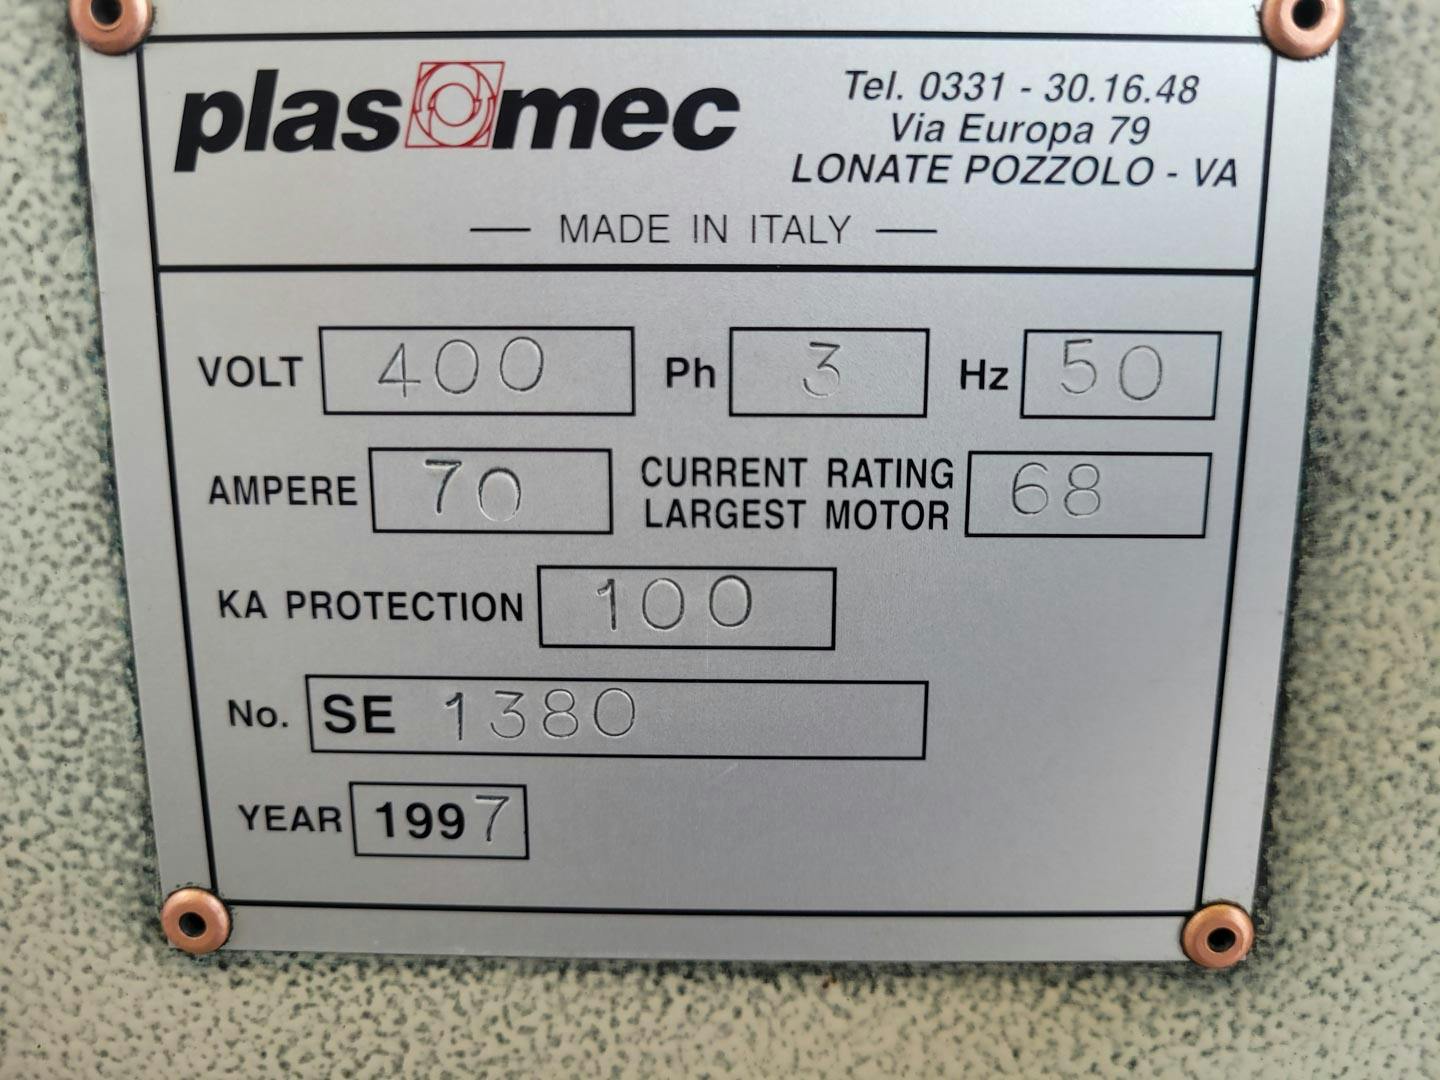 Plasmec TRM 200 - Misturador a quente - image 17